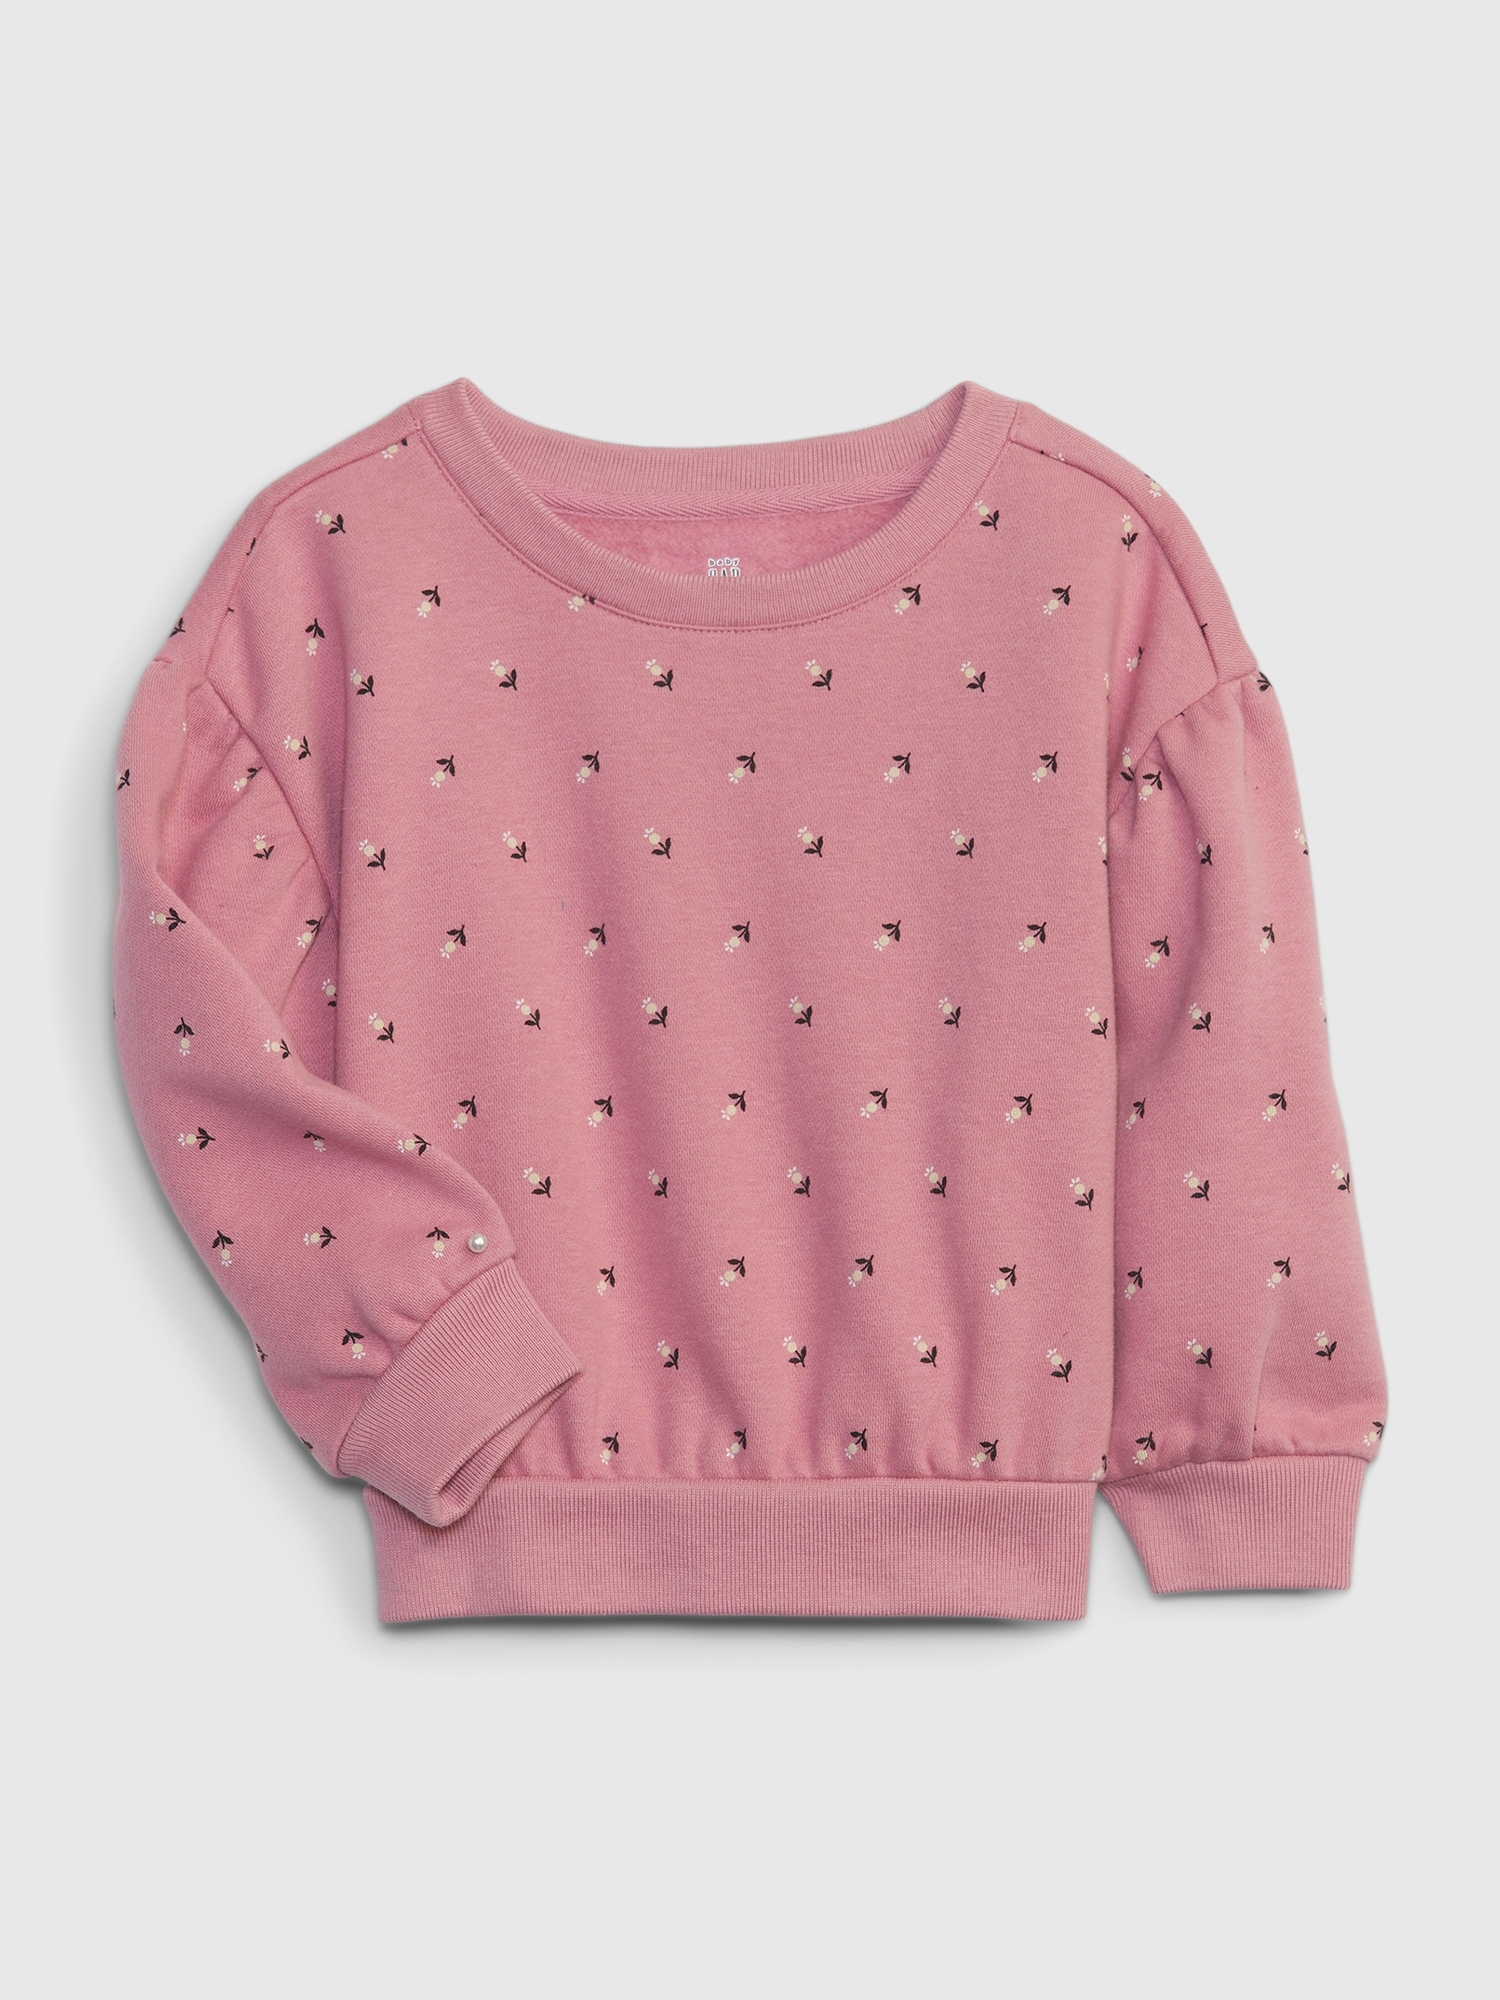 Toddler Floral Sweatshirt | Gap